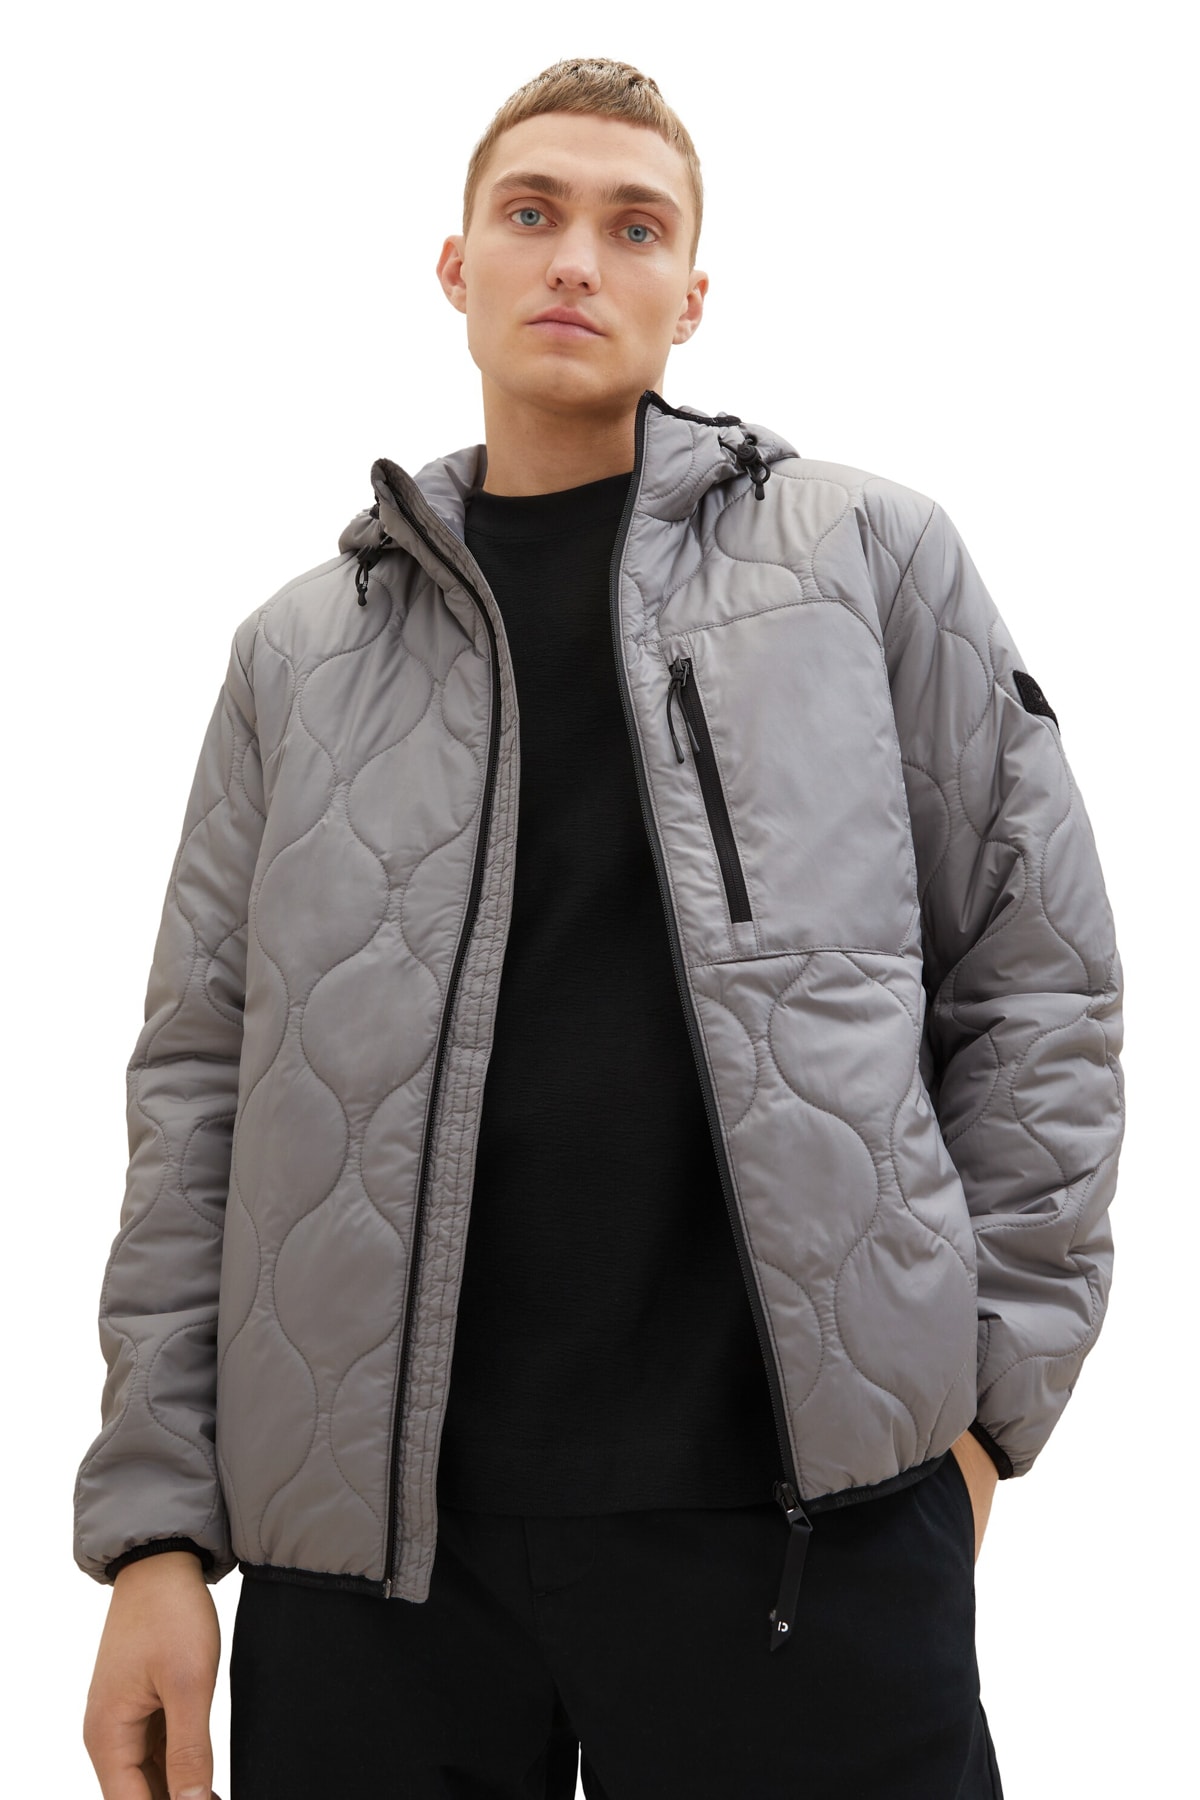 Зимняя куртка - Серая - Пуховик Tom Tailor Denim, серый толстовка tom tailor размер s серый